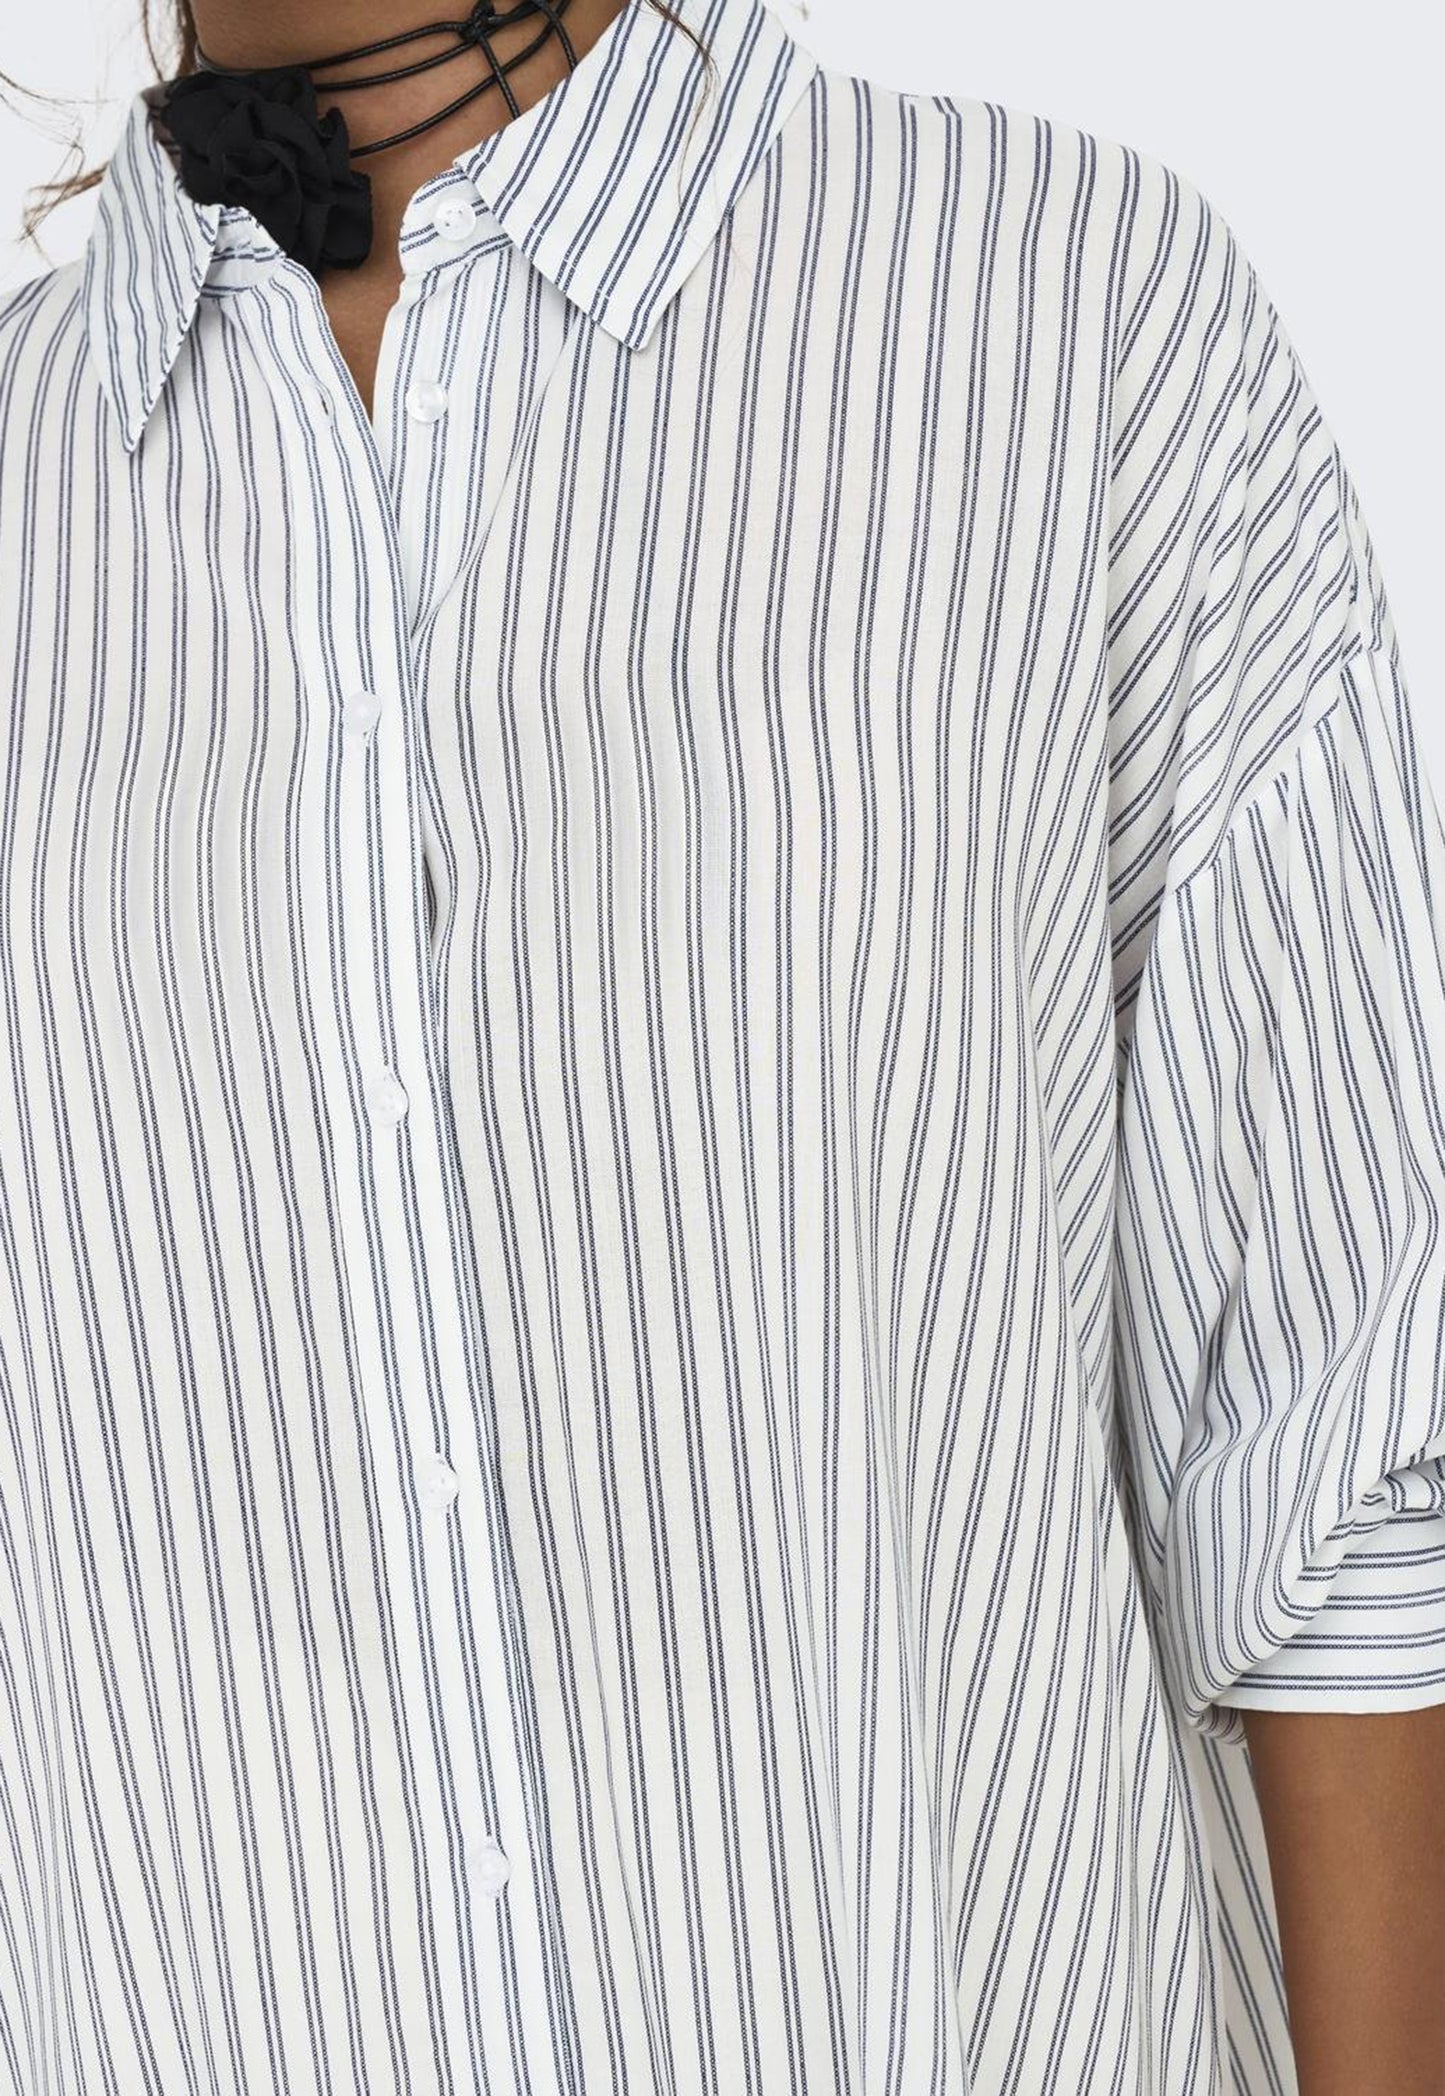 
                  
                    JDY Grace Stripe Longline Langarm-Baumwollhemd mit abfallendem Saum in Weiß und Marineblau – One Nation Clothing
                  
                